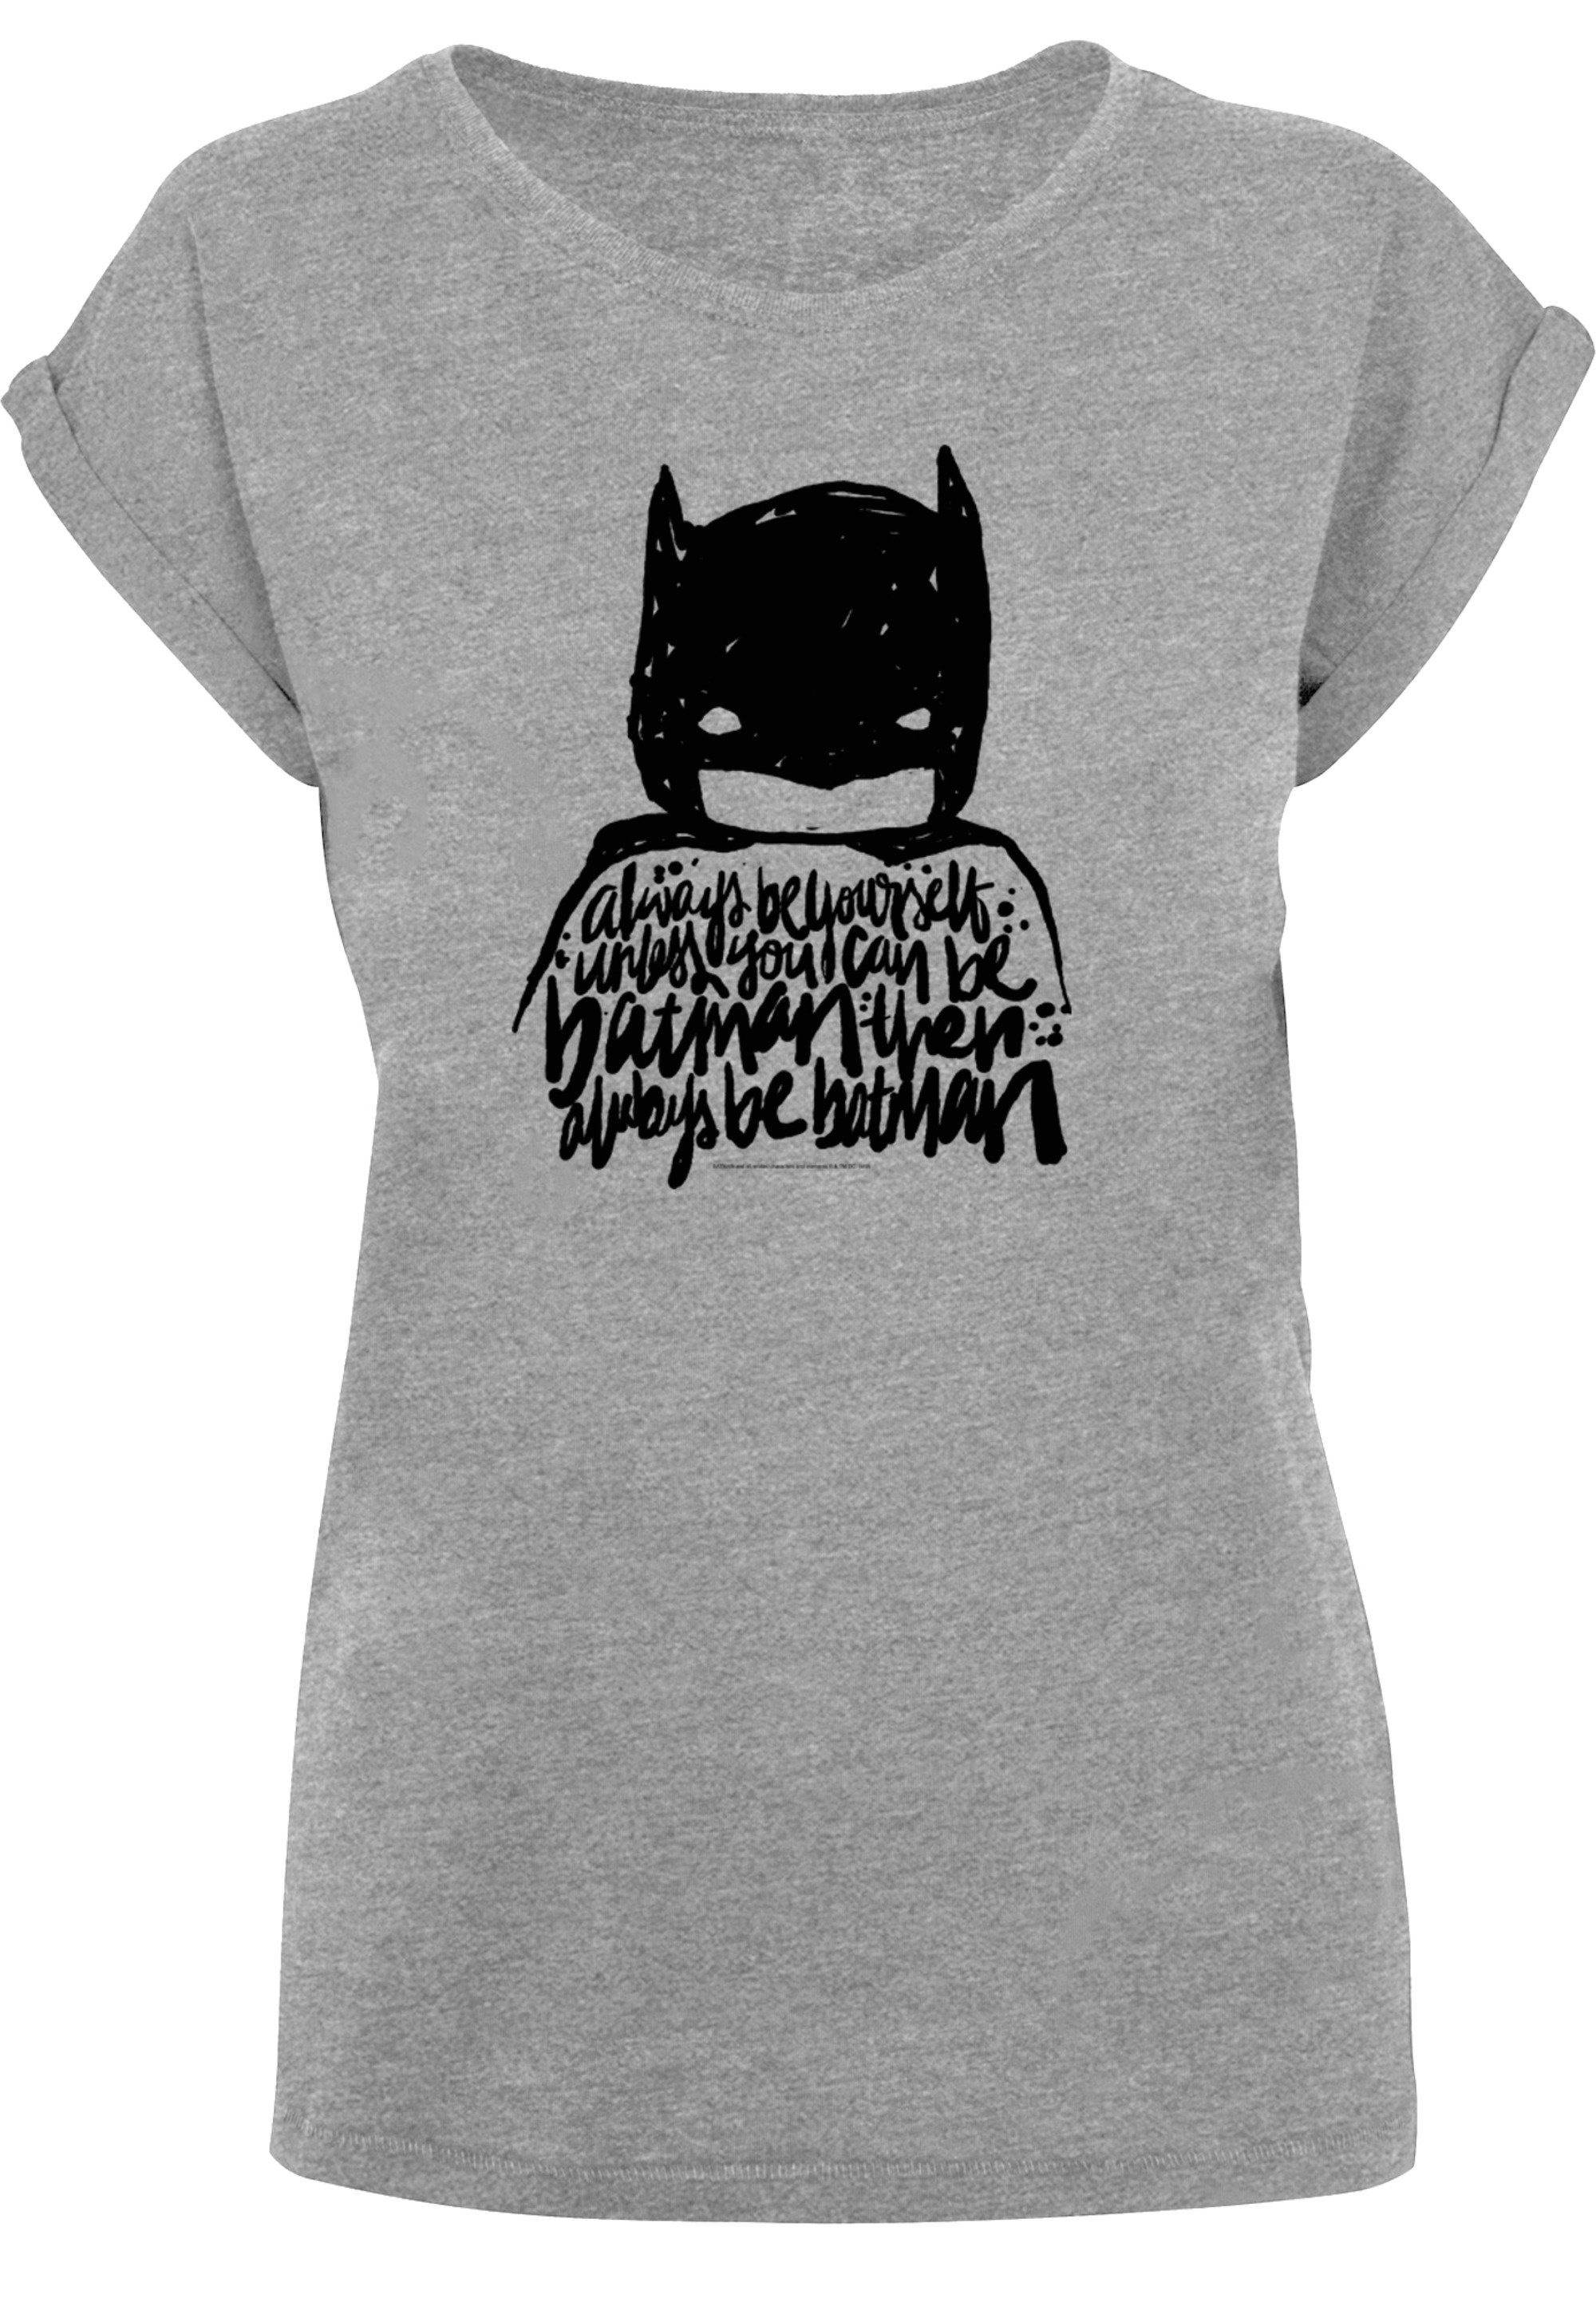 F4NT4STIC T-Shirt DC Comics Yourself Always mit hohem Batman Sehr Be weicher Print, Tragekomfort Baumwollstoff